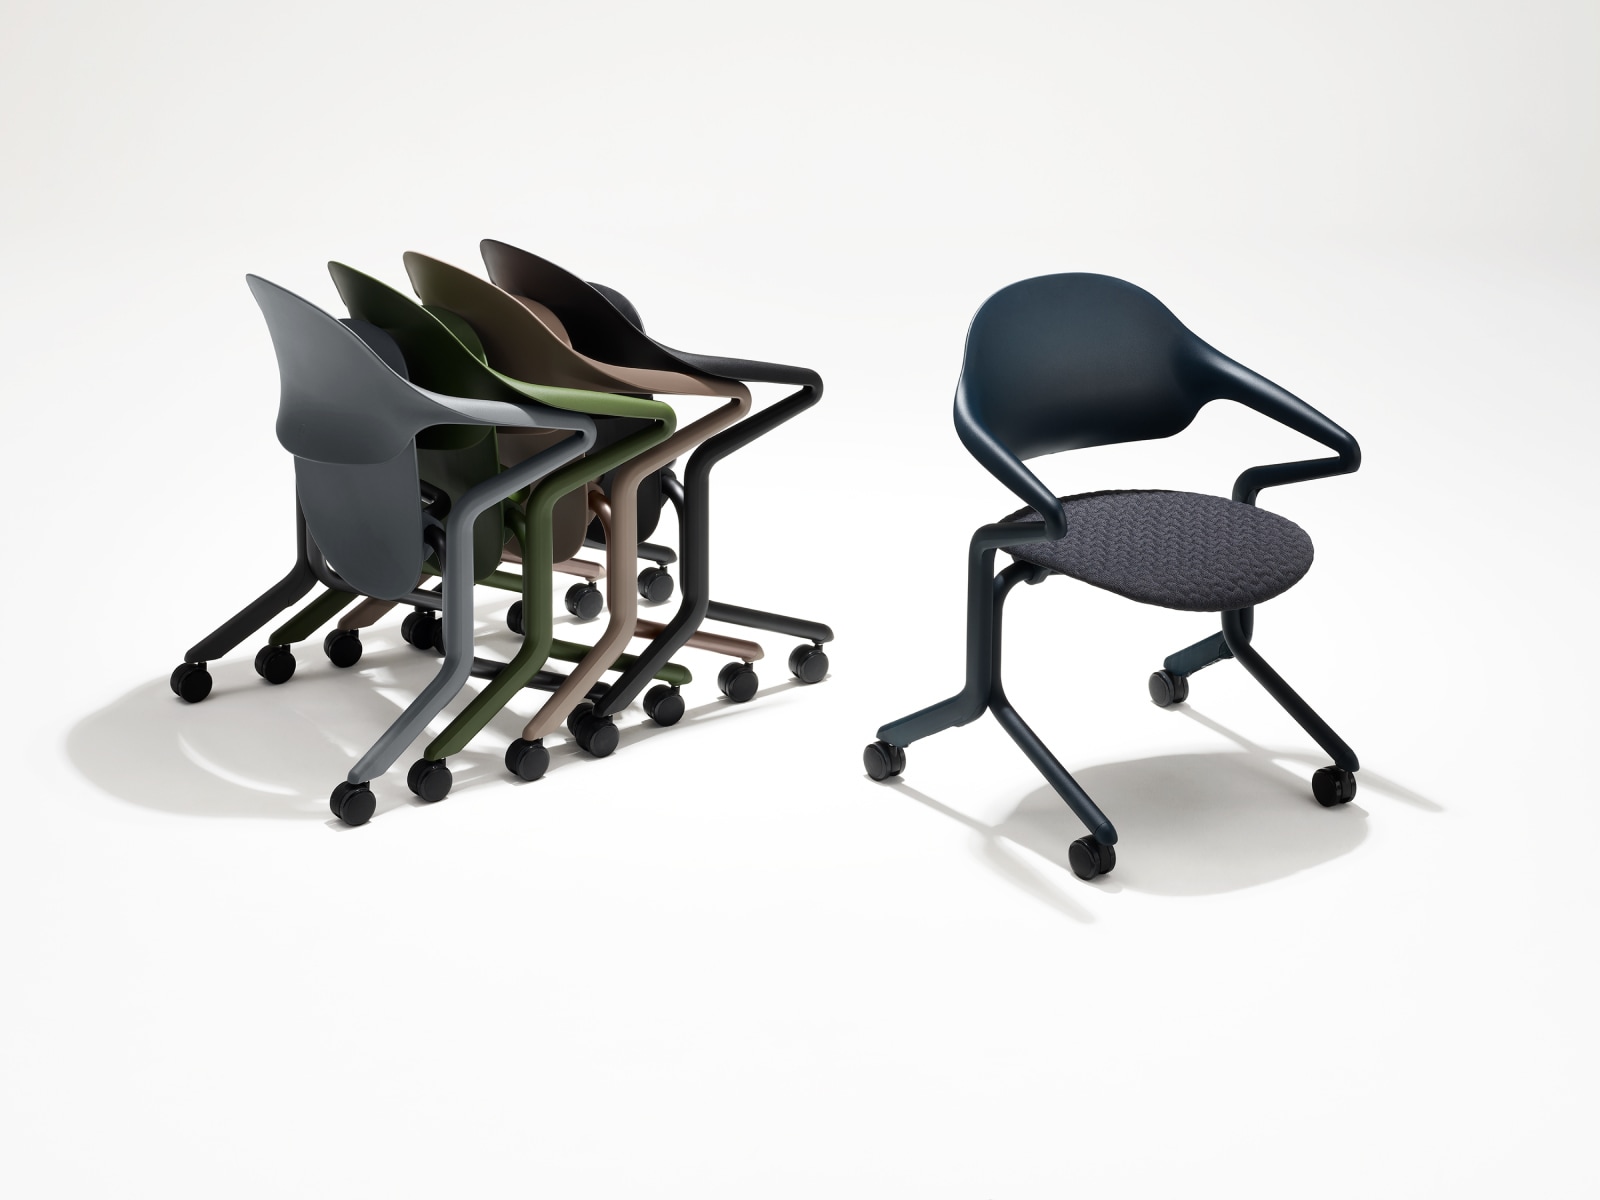 四把不同颜色和饰面的 Fuld 嵌套式座椅，嵌套摆放，旁边是一把 Fuld 嵌套式座椅，Nightfall，具有 3D 针织织物。